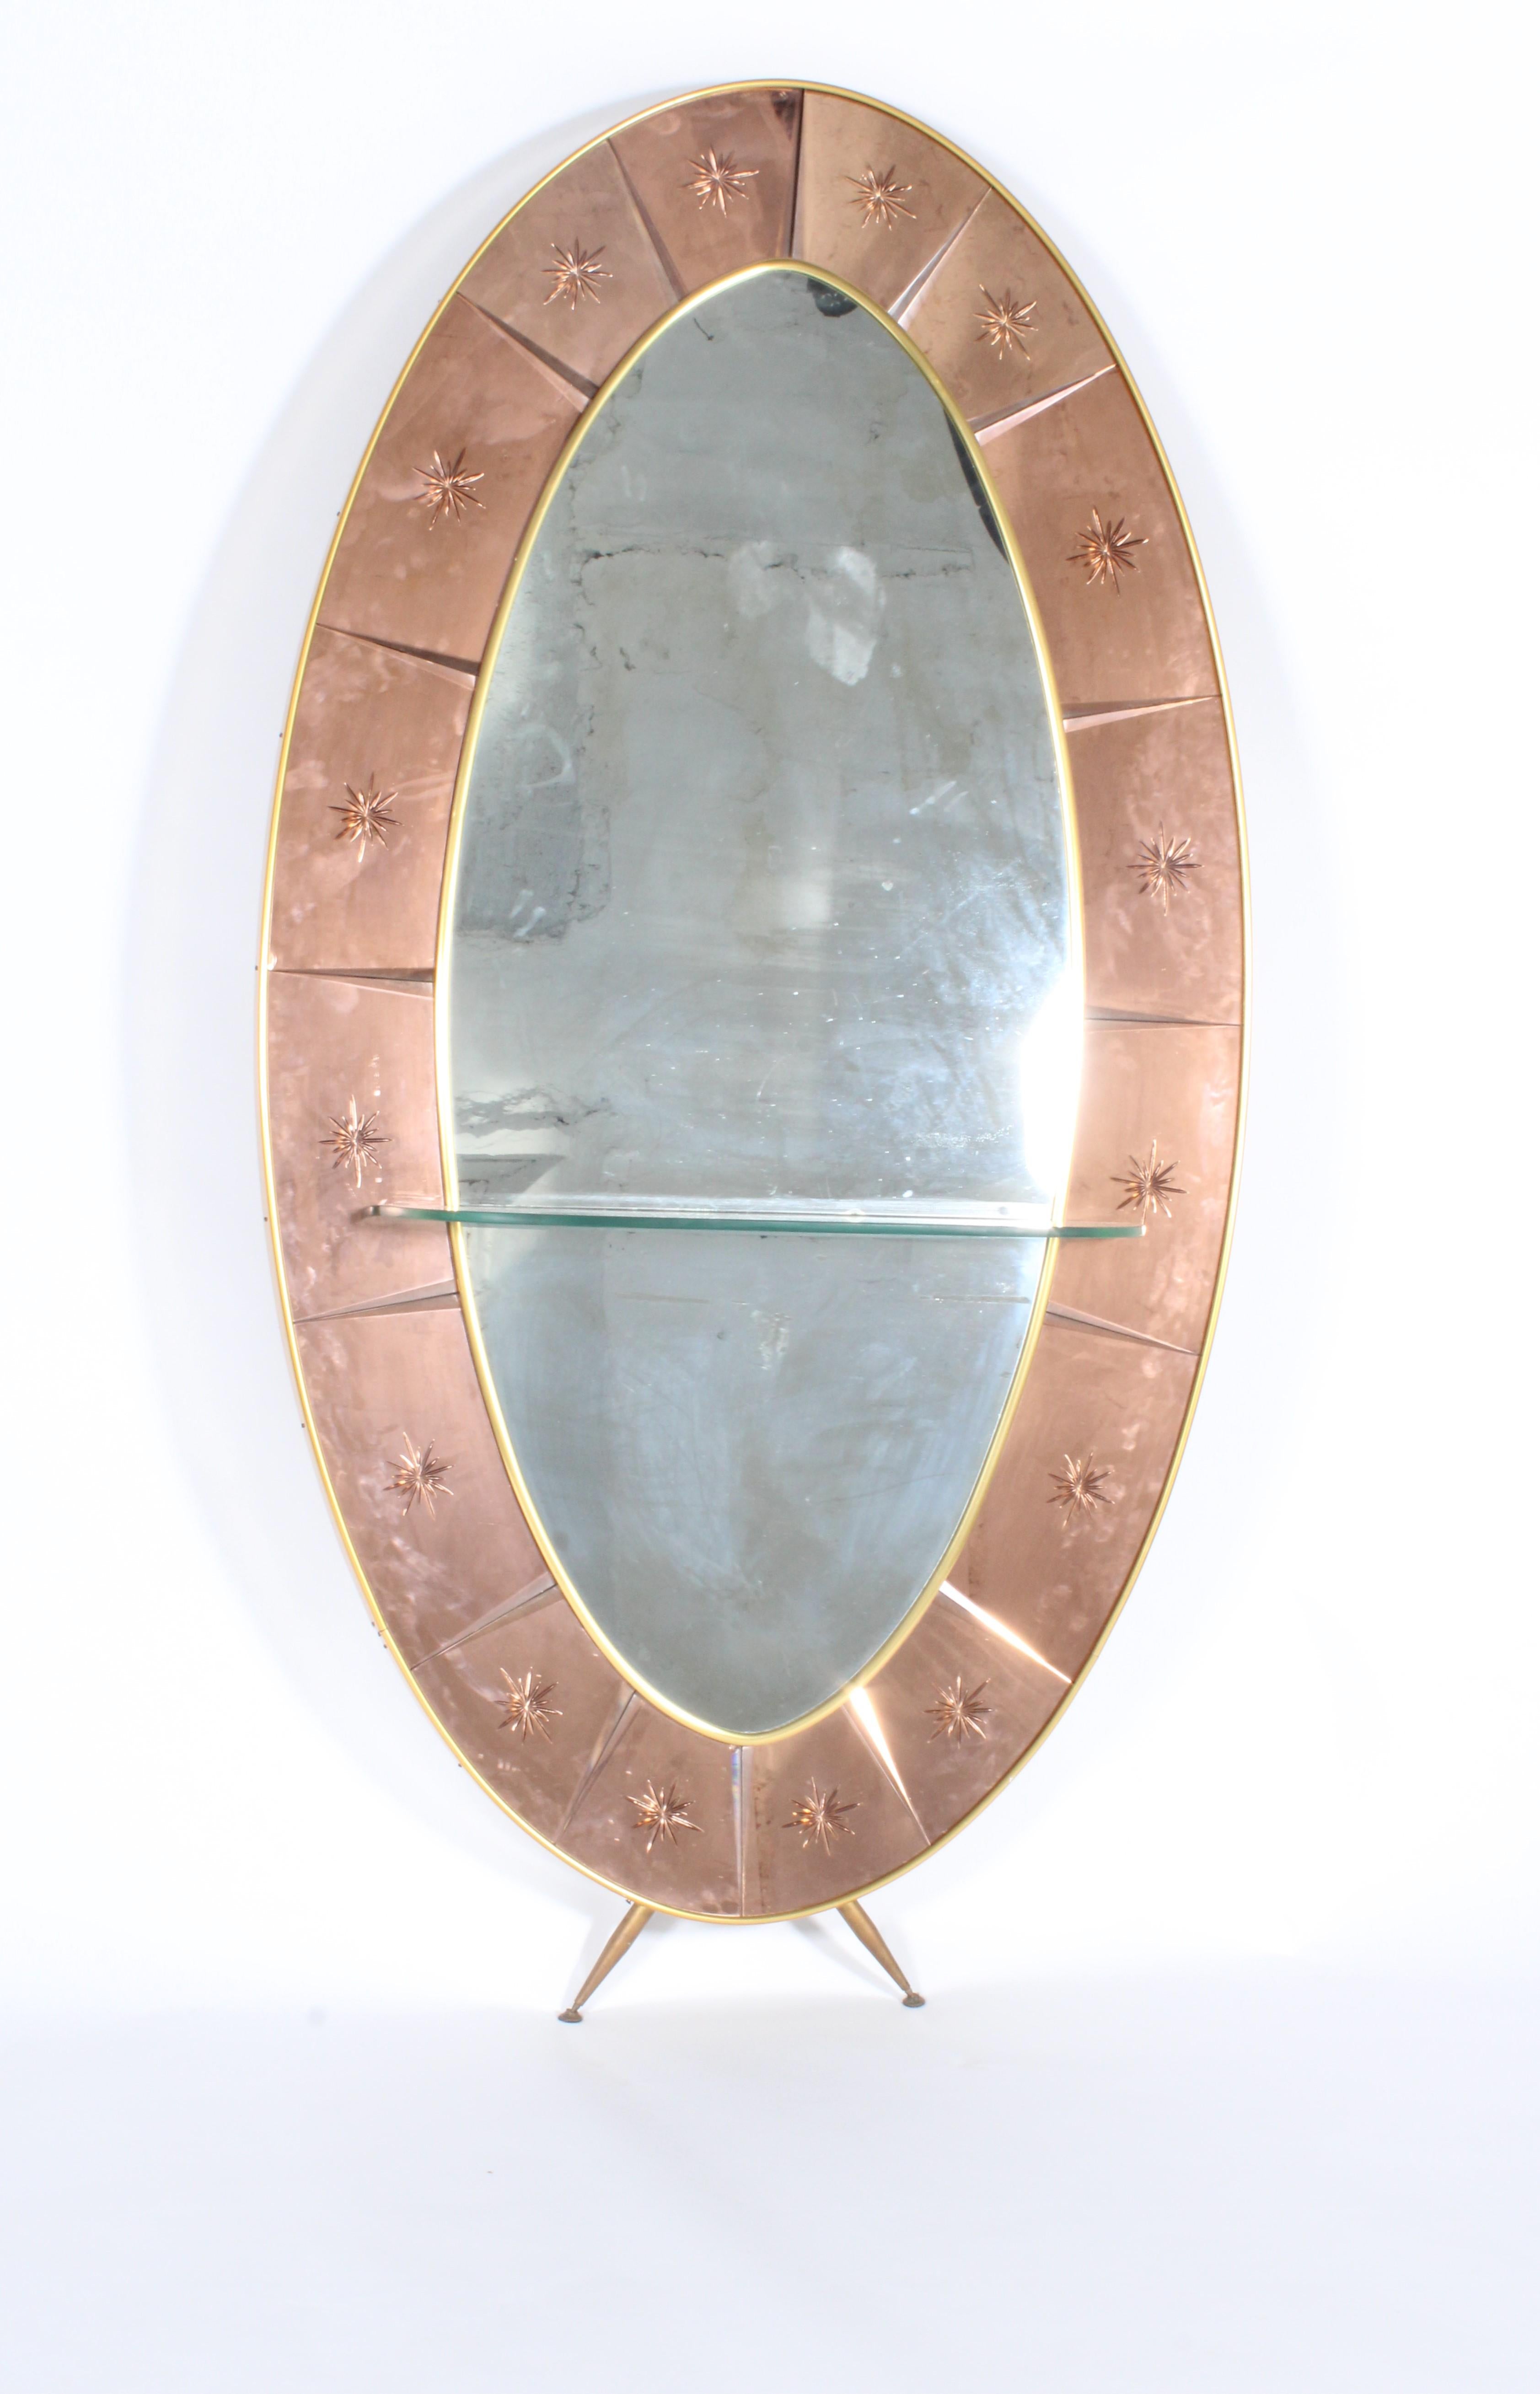 Hervorragender, unberührter originaler italienischer Cristal Arte-Spiegel aus der Mitte des Jahrhunderts in voller Länge aus super seltenem rosa Glas mit geätzten Details und zentraler Konsole. Dieses Exemplar stammt direkt aus einer Privatsammlung